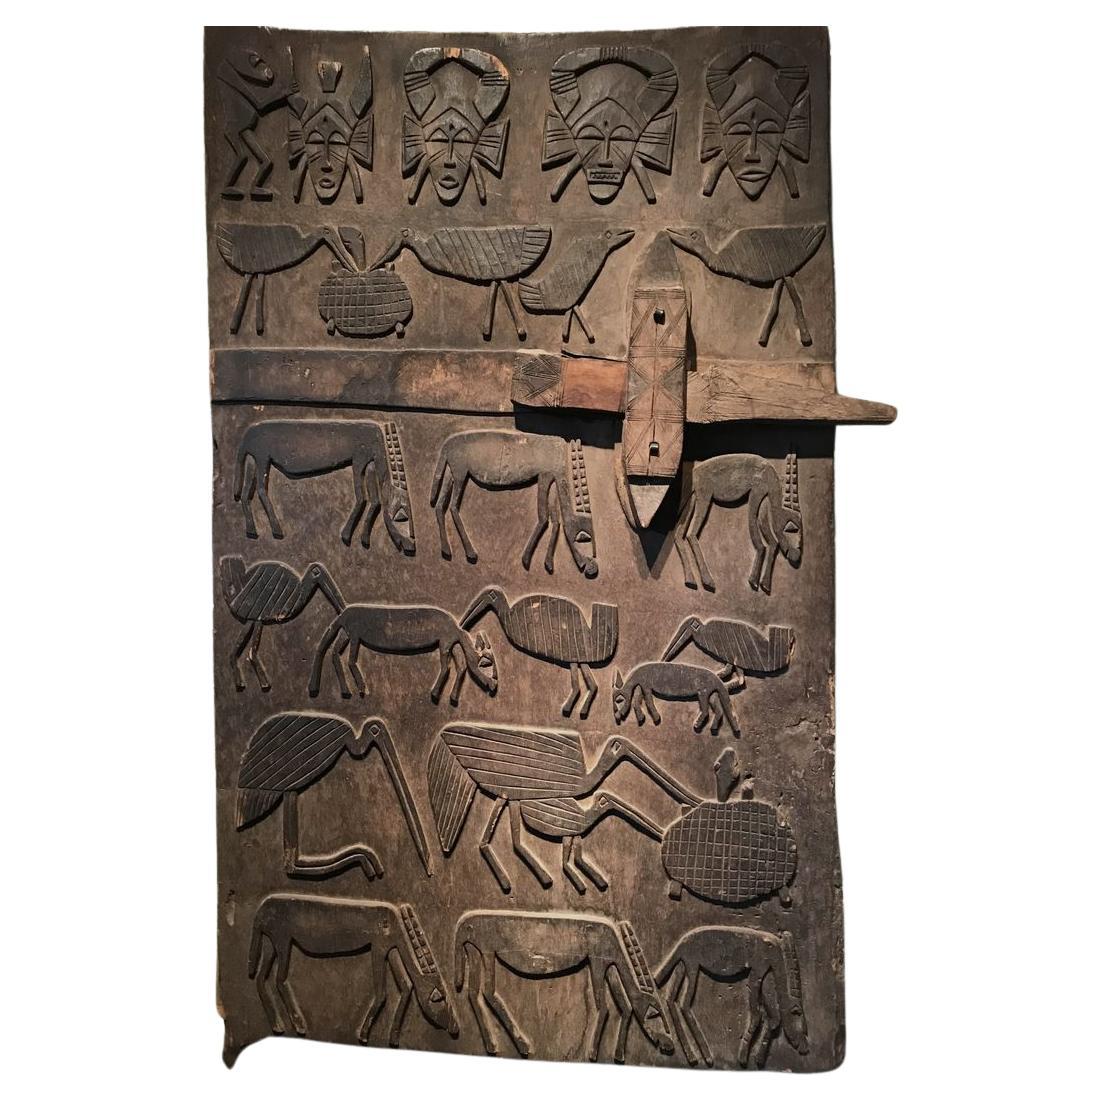 Senufo Granary-Tür mit der Darstellung einer Serie von Tieren und Masken